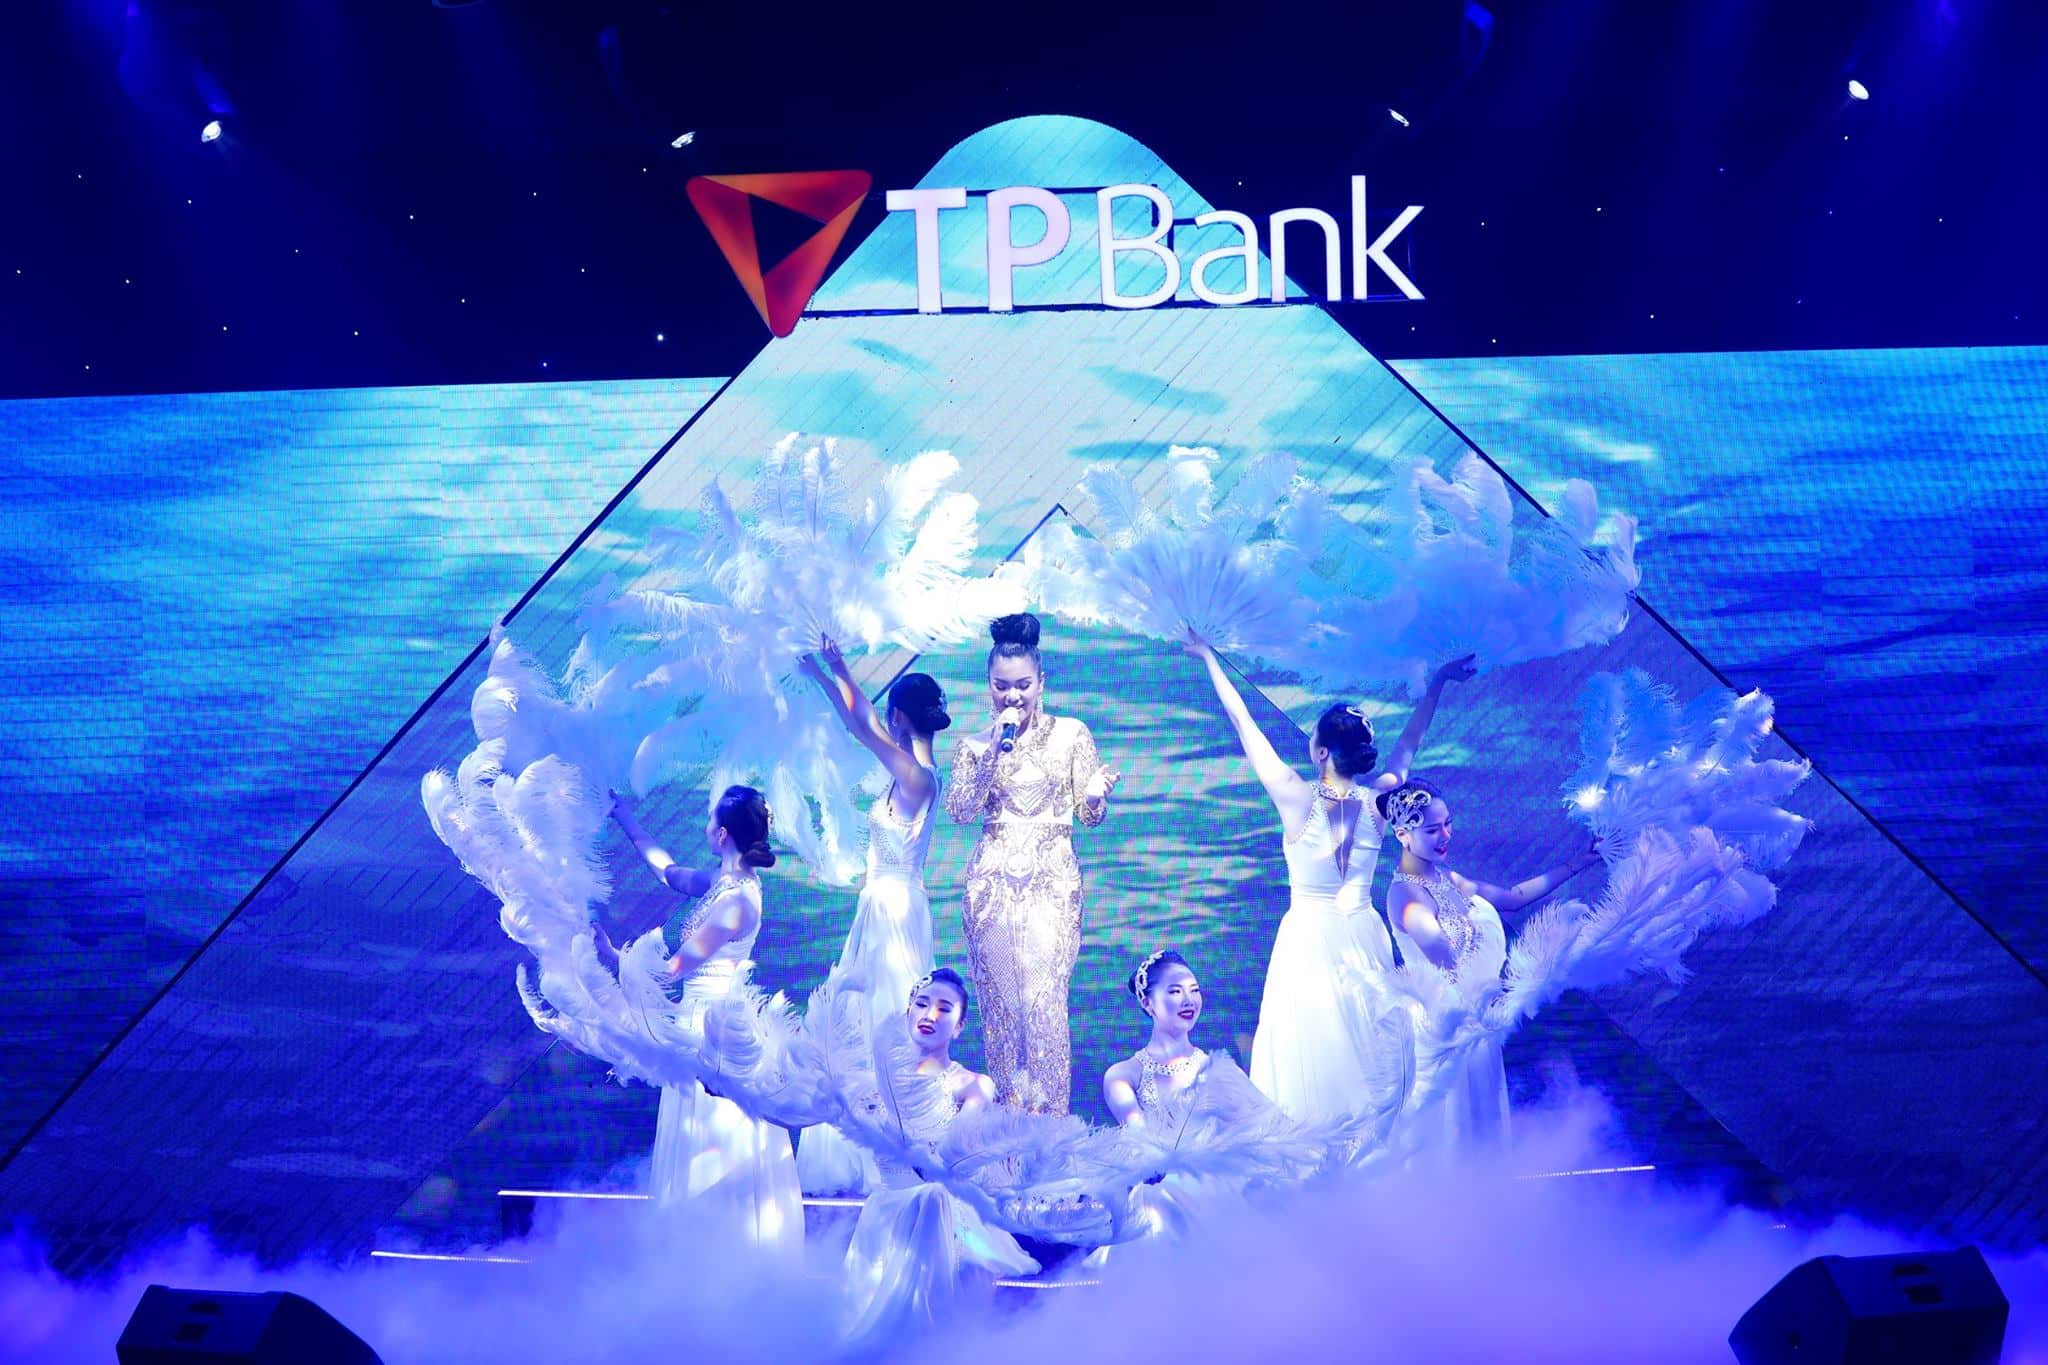 Á Châu cung cấp người mẫu, vũ đoàn, ca sĩ cho đêm sự kiện TP Bank